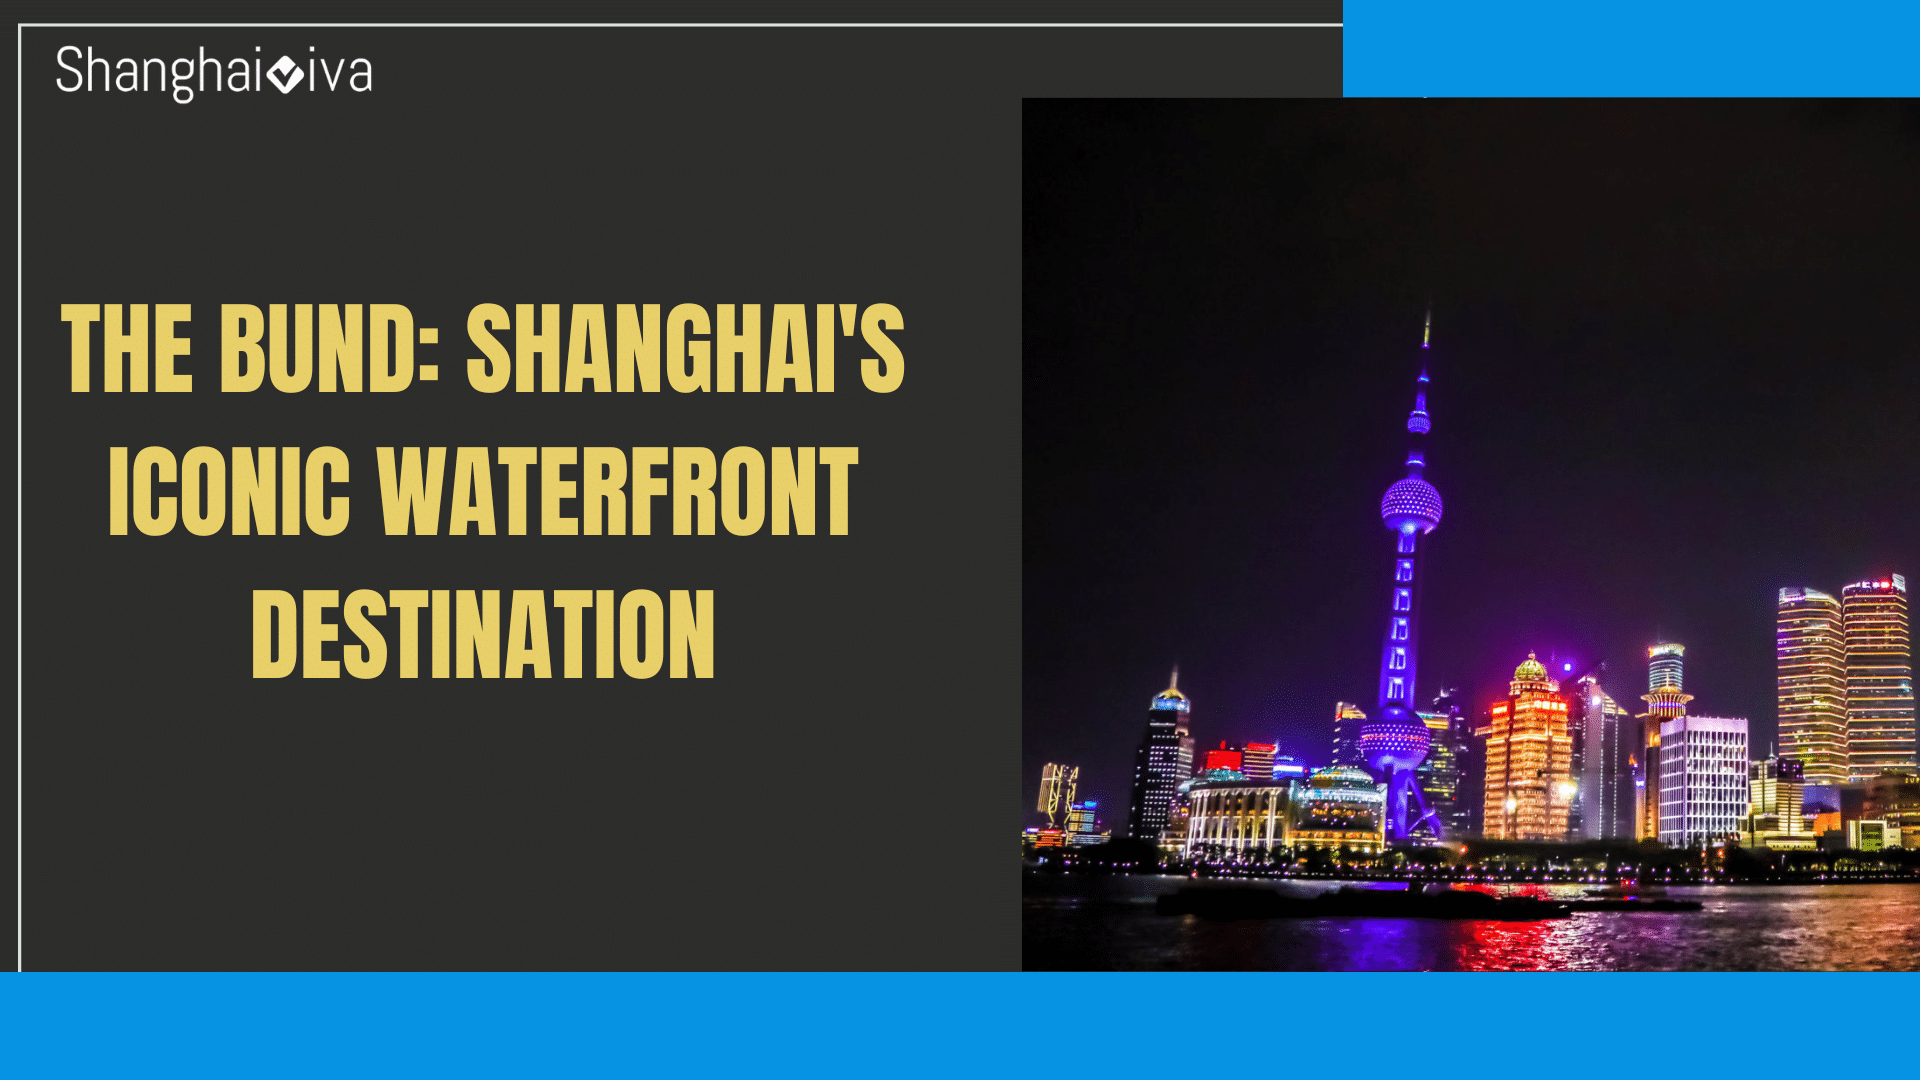 The Bund: Shanghai’s Iconic Waterfront Destination